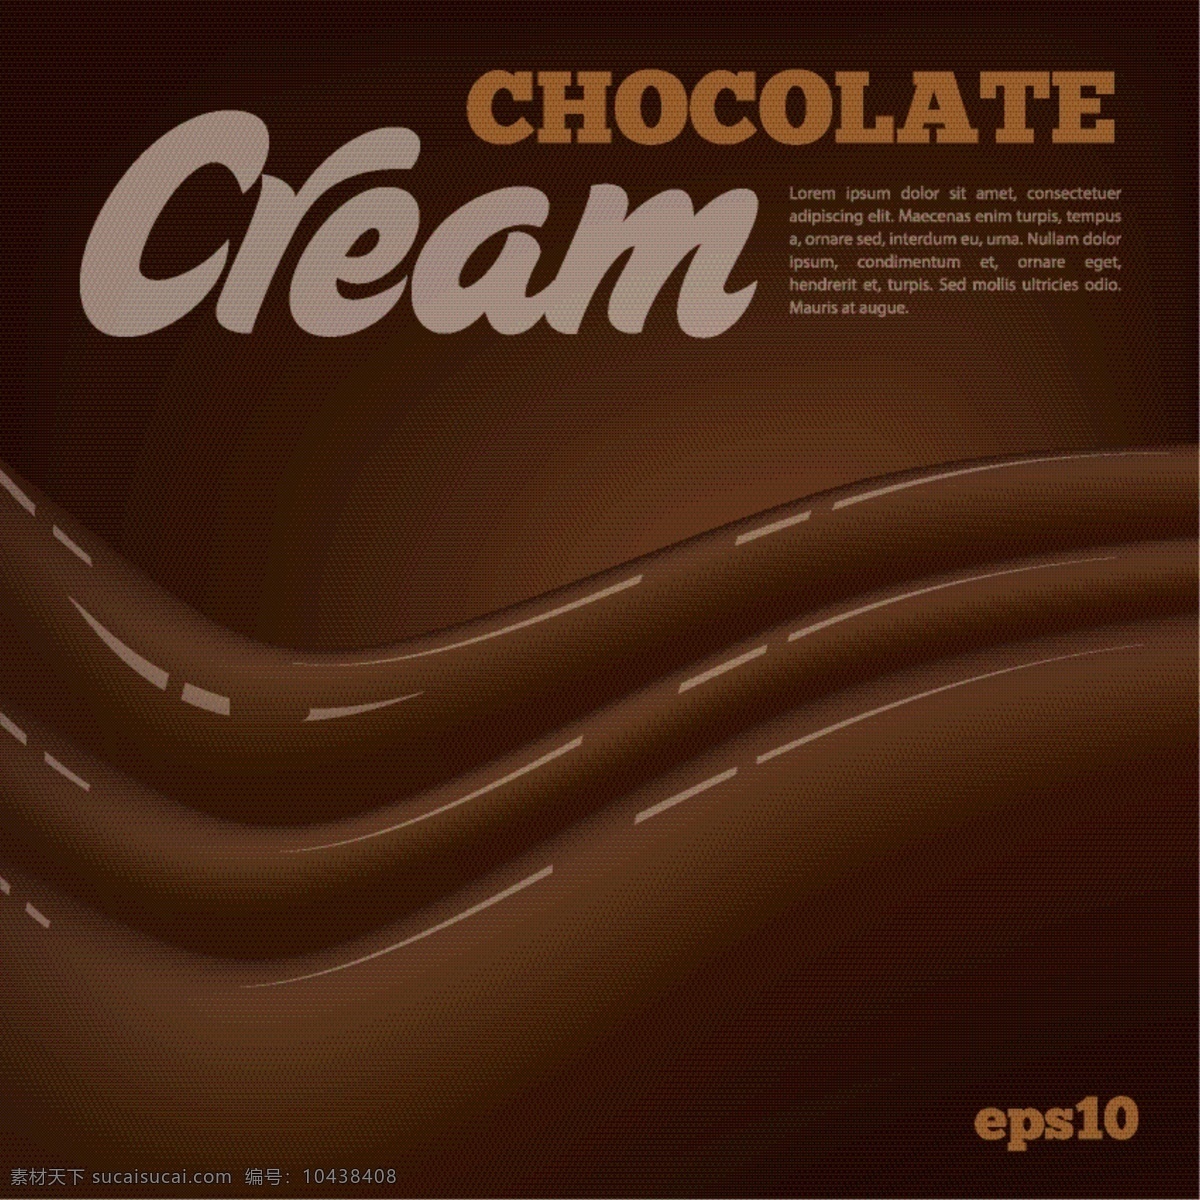 巧克力牛奶 丝滑巧克力 热巧克力 巧克力背景 美食 巧克力 甜点 甜品 时尚背景